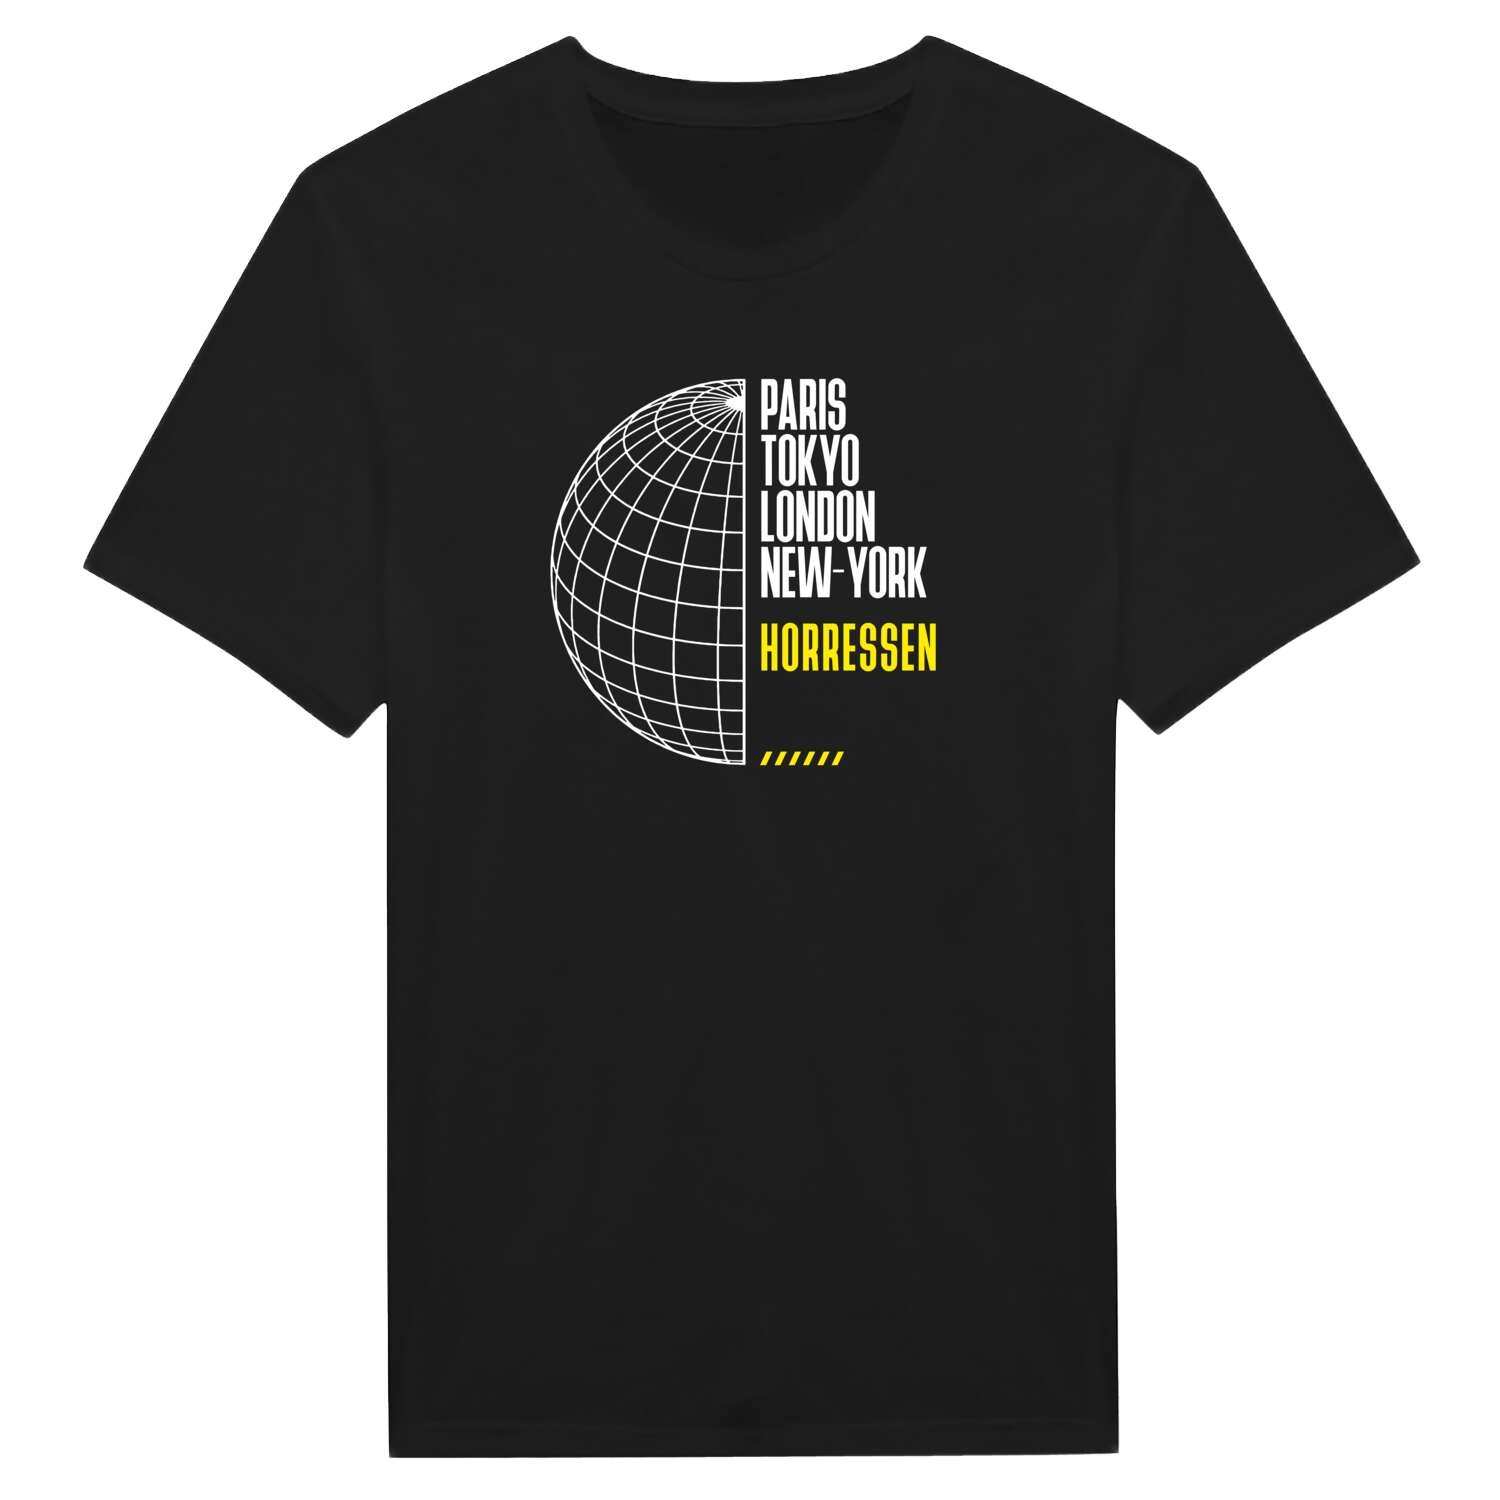 Horressen T-Shirt »Paris Tokyo London«